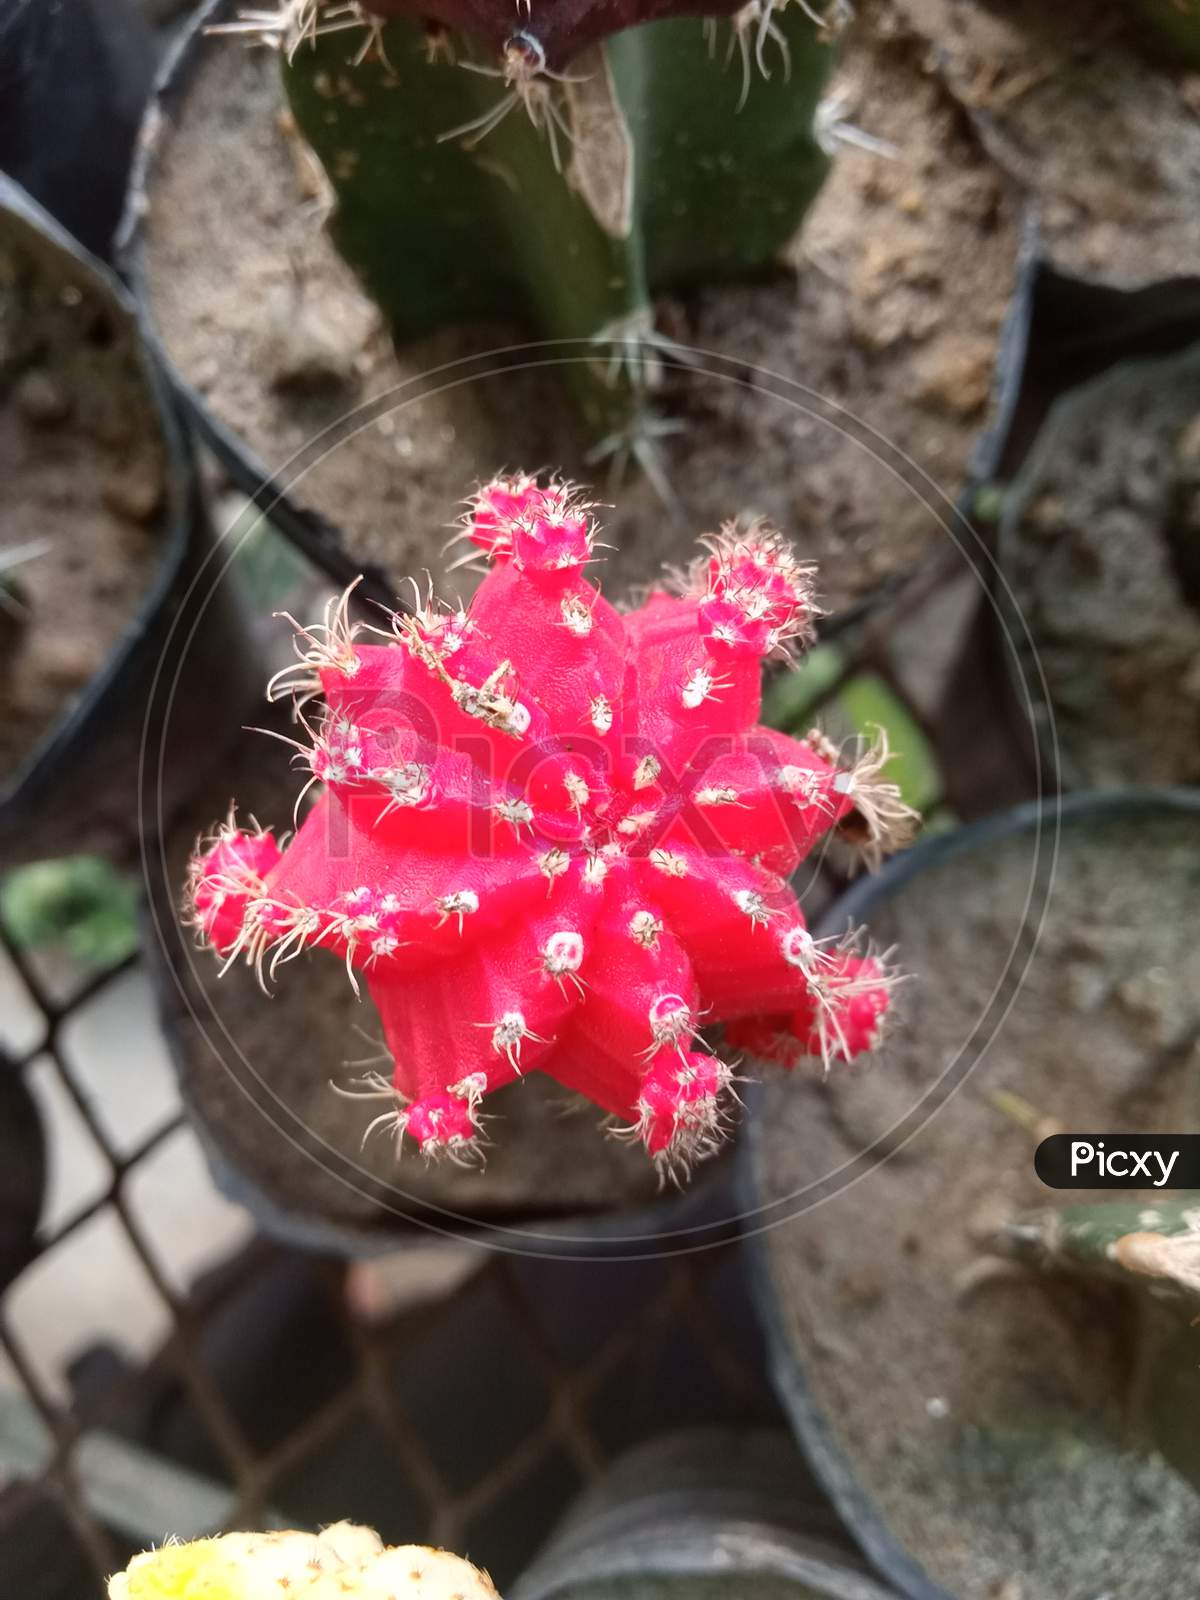 Red Cactus. Gymnocalycium Mihanovichii Cactus.